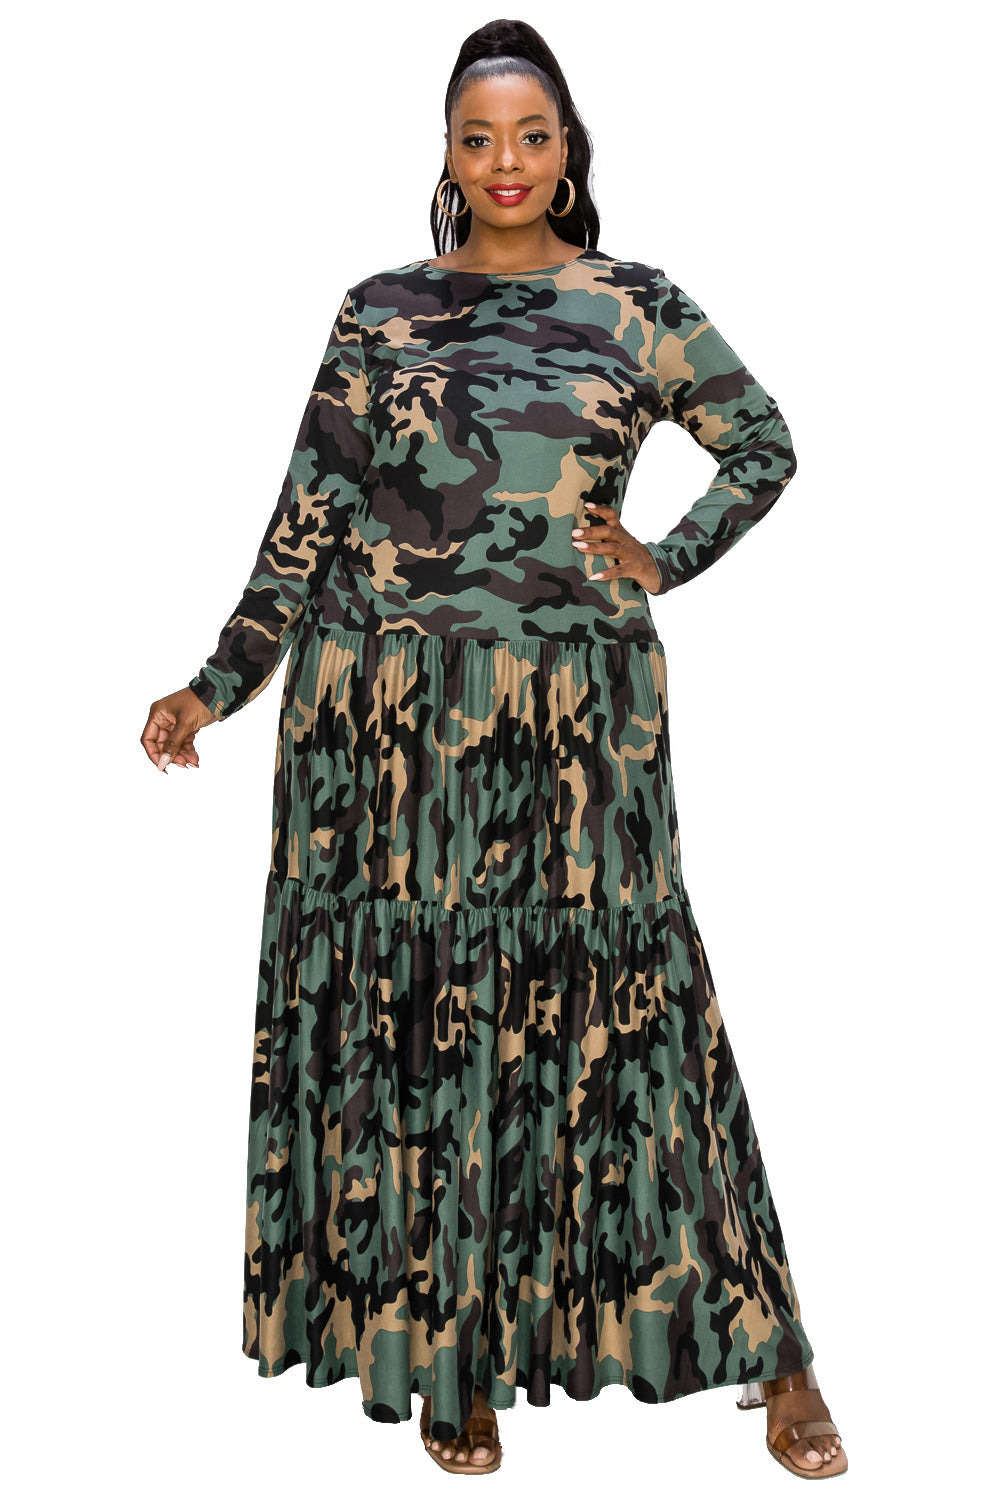 New PLUS SIZE Women USA SOFT OLIVE GREEN CAMO CAMOUFLAGE POCKETS DRESS 1X  2X